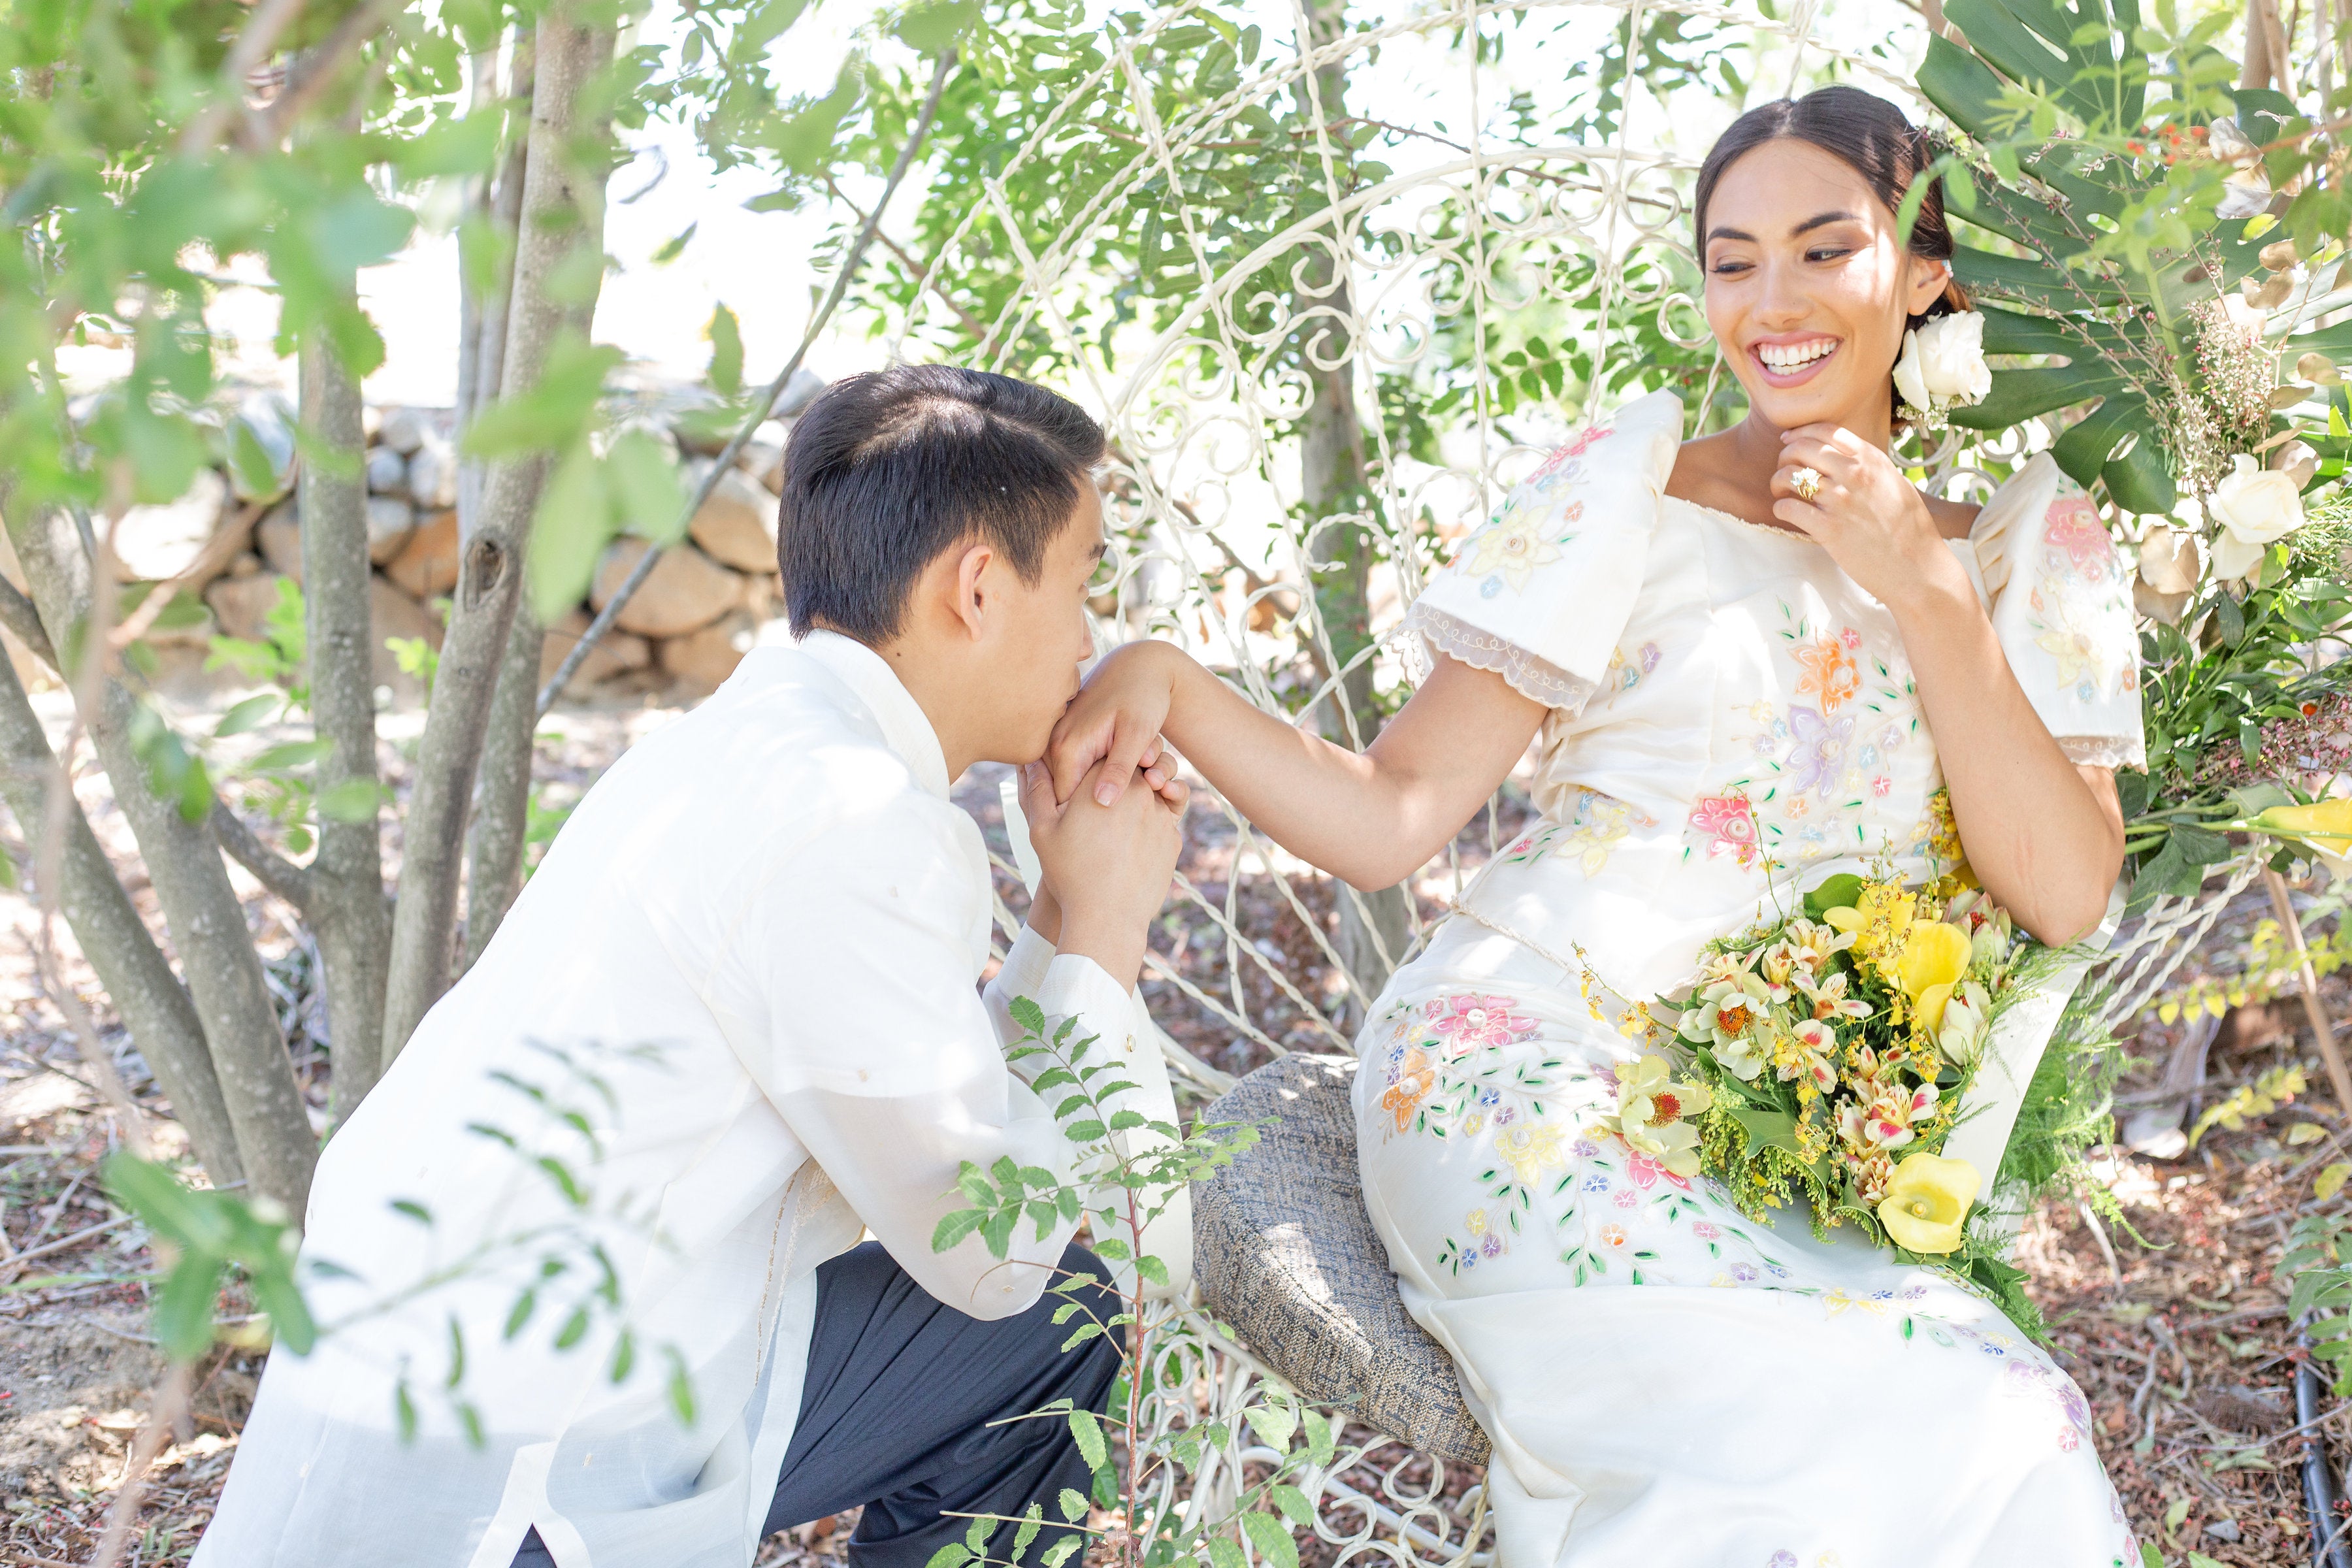 filipino wedding dress